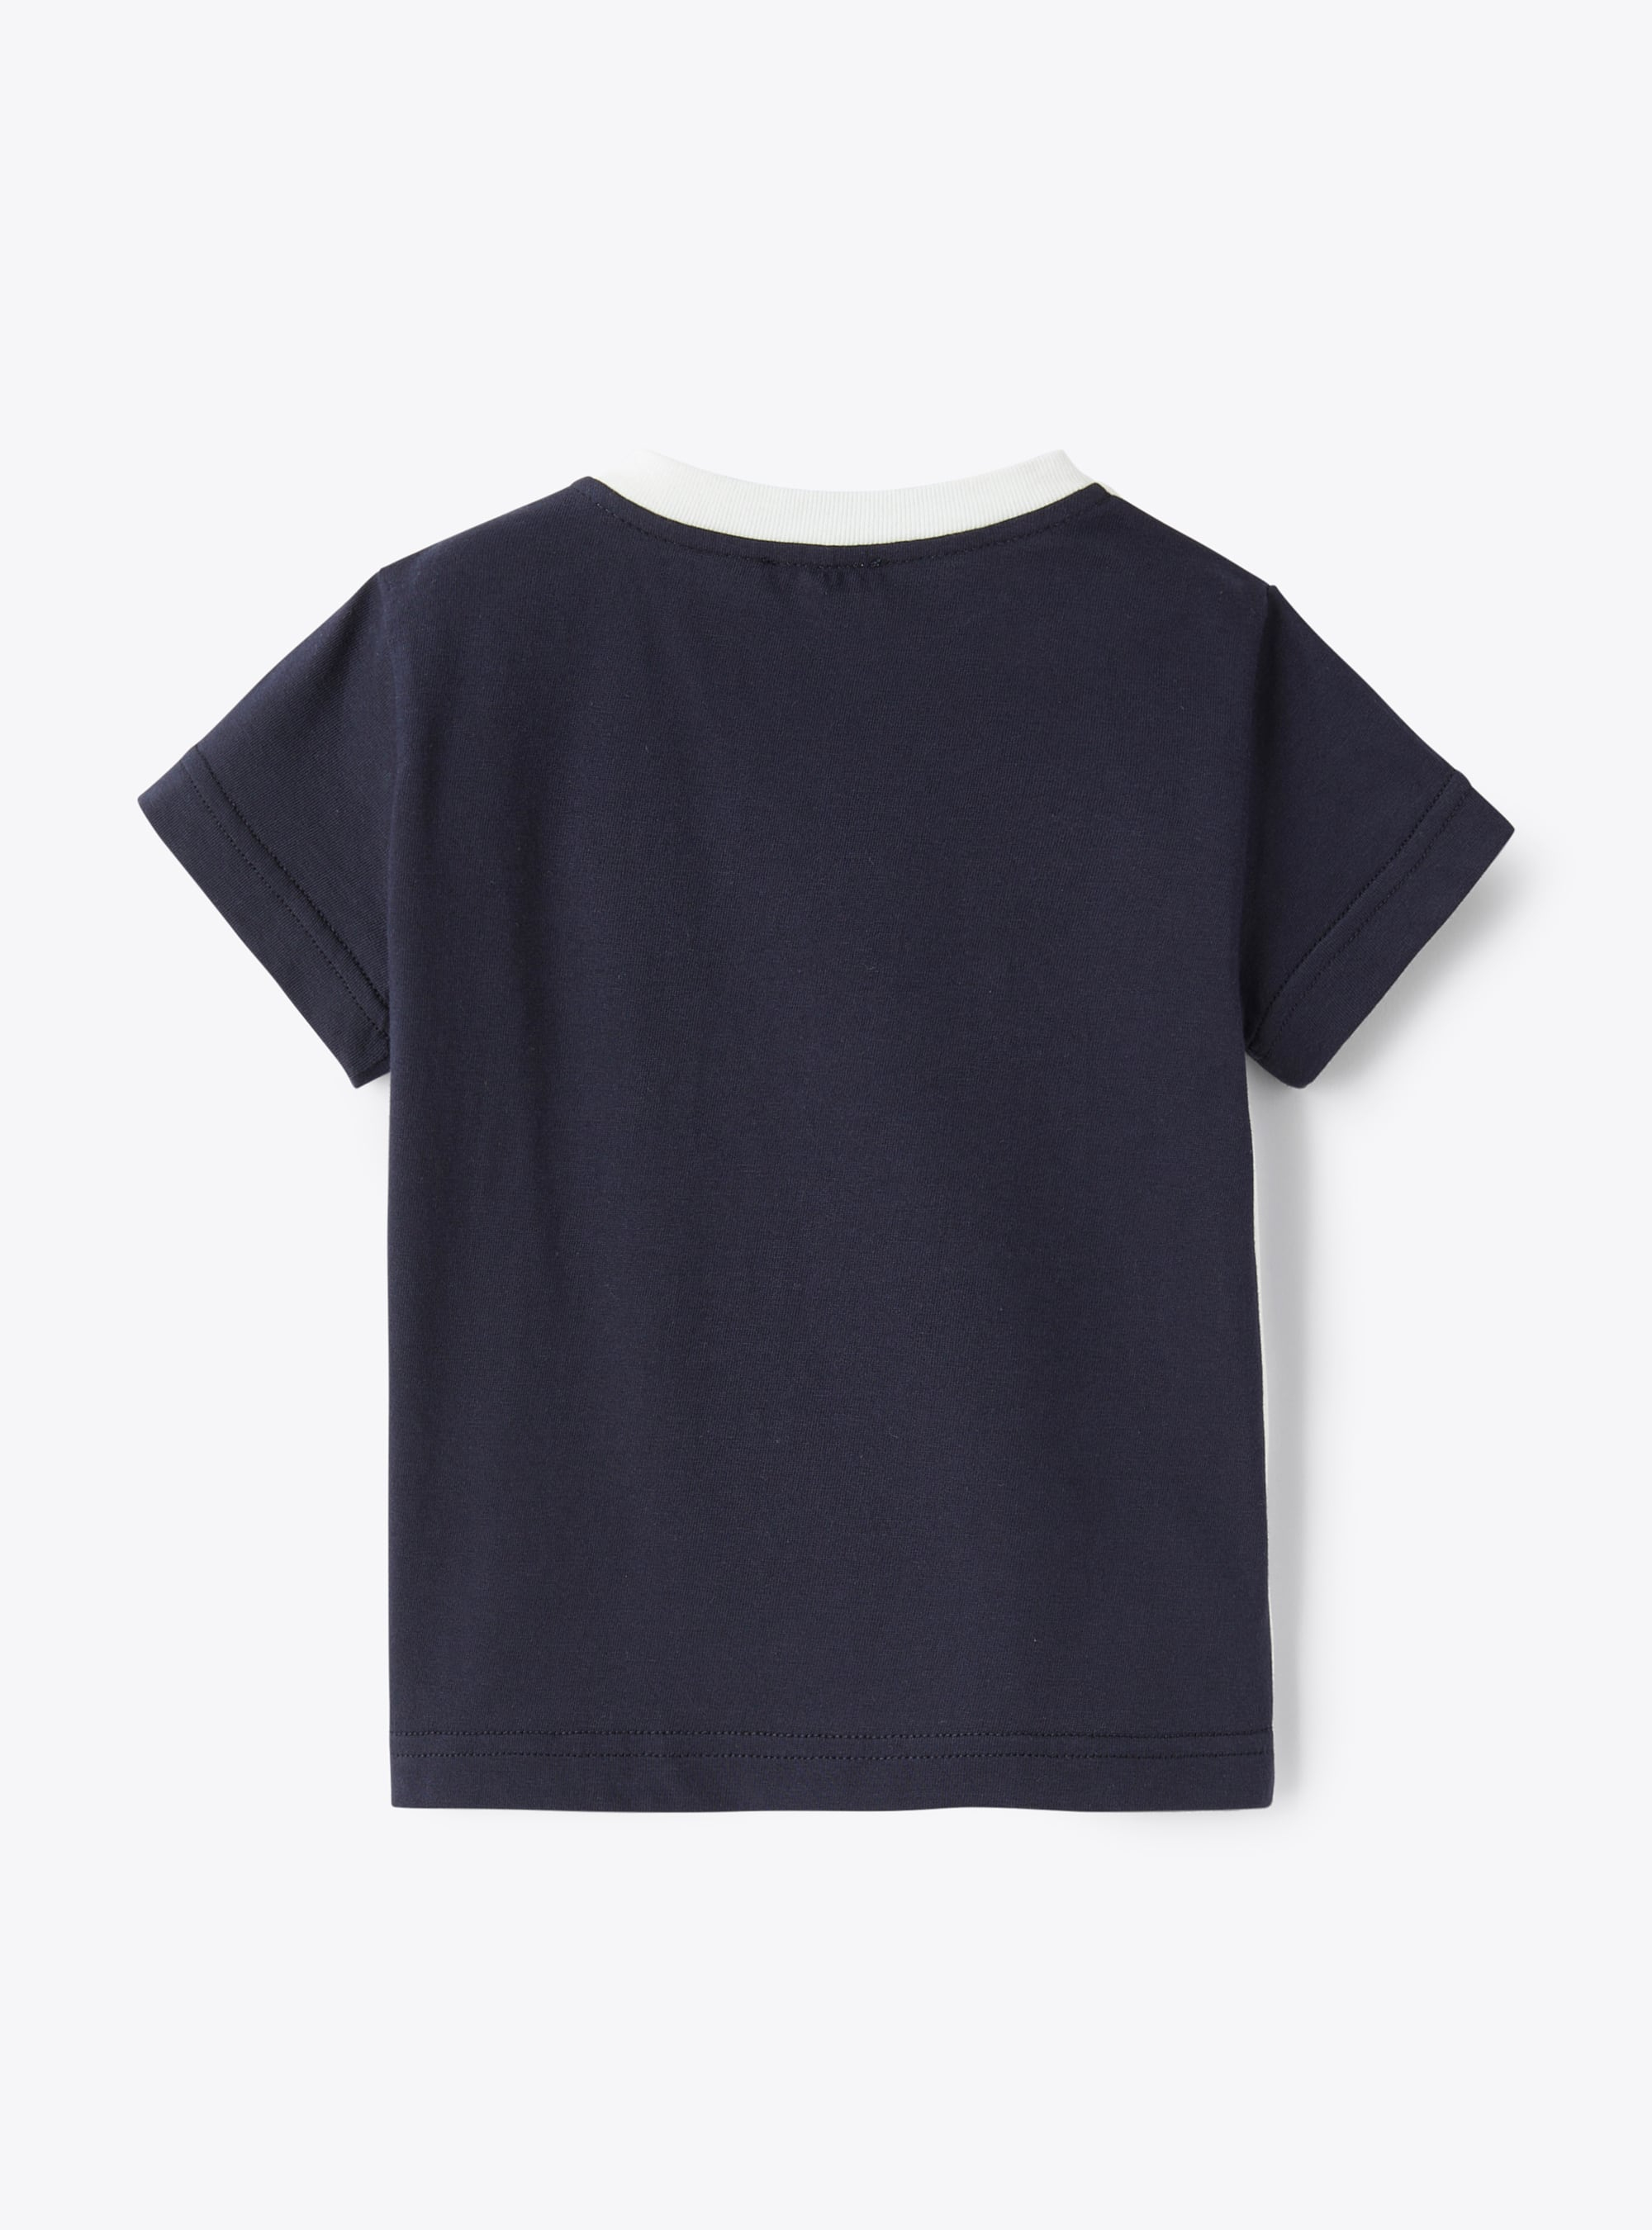 T-shirt neonato bicolore con applicazione orsetto - Blu | Il Gufo